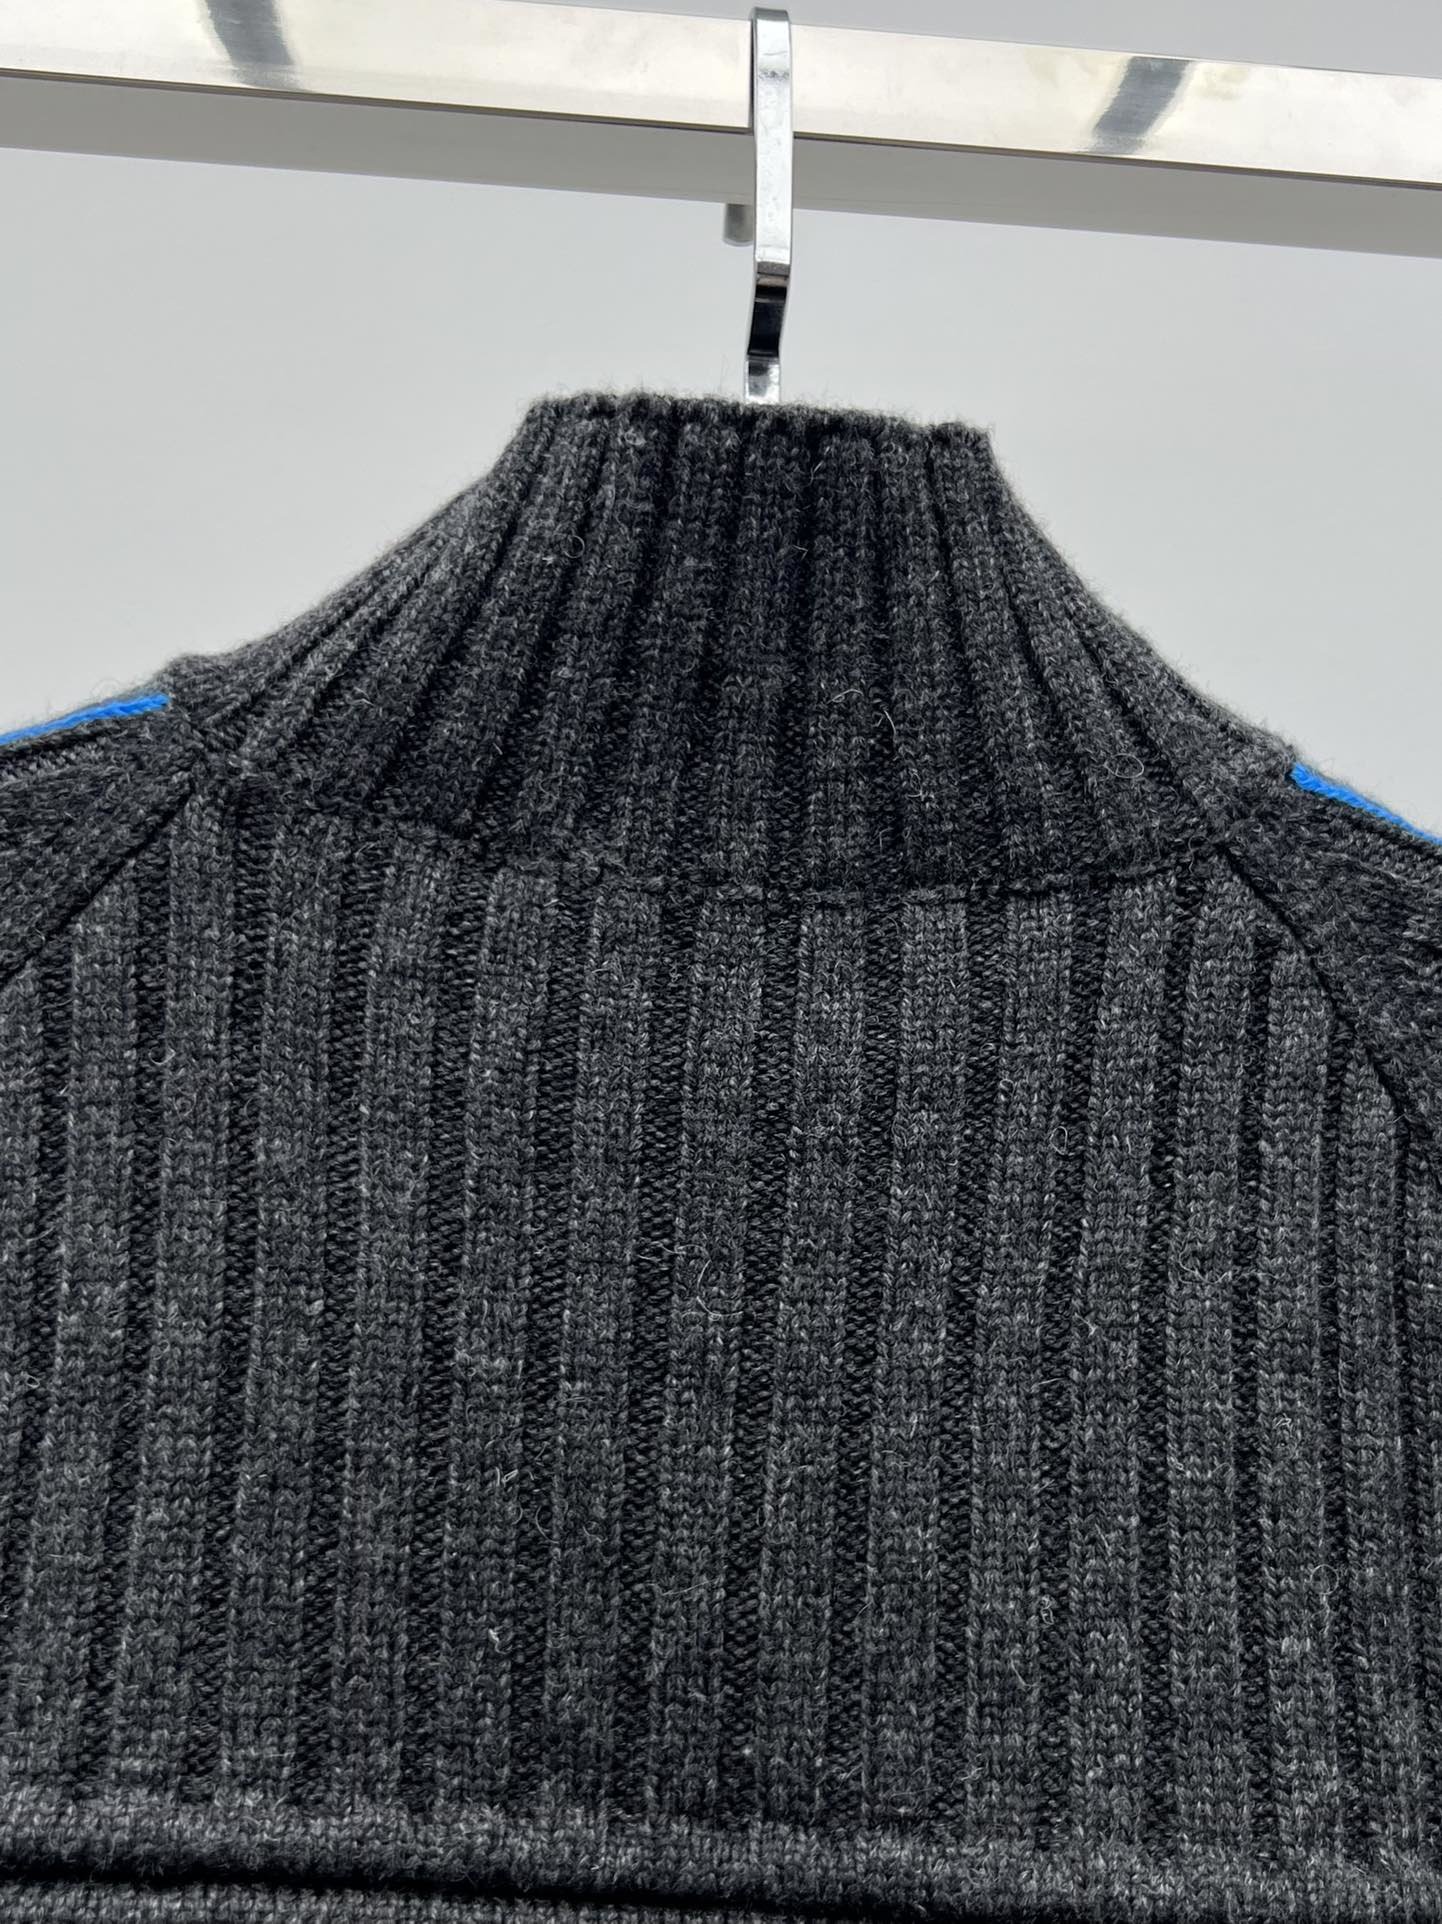 LOUISVUITTO*撞色细节套头毛衣秋冬新款ski系列本款高领毛衣以舒适厚重的羊绒罗纹针织打造肩部和